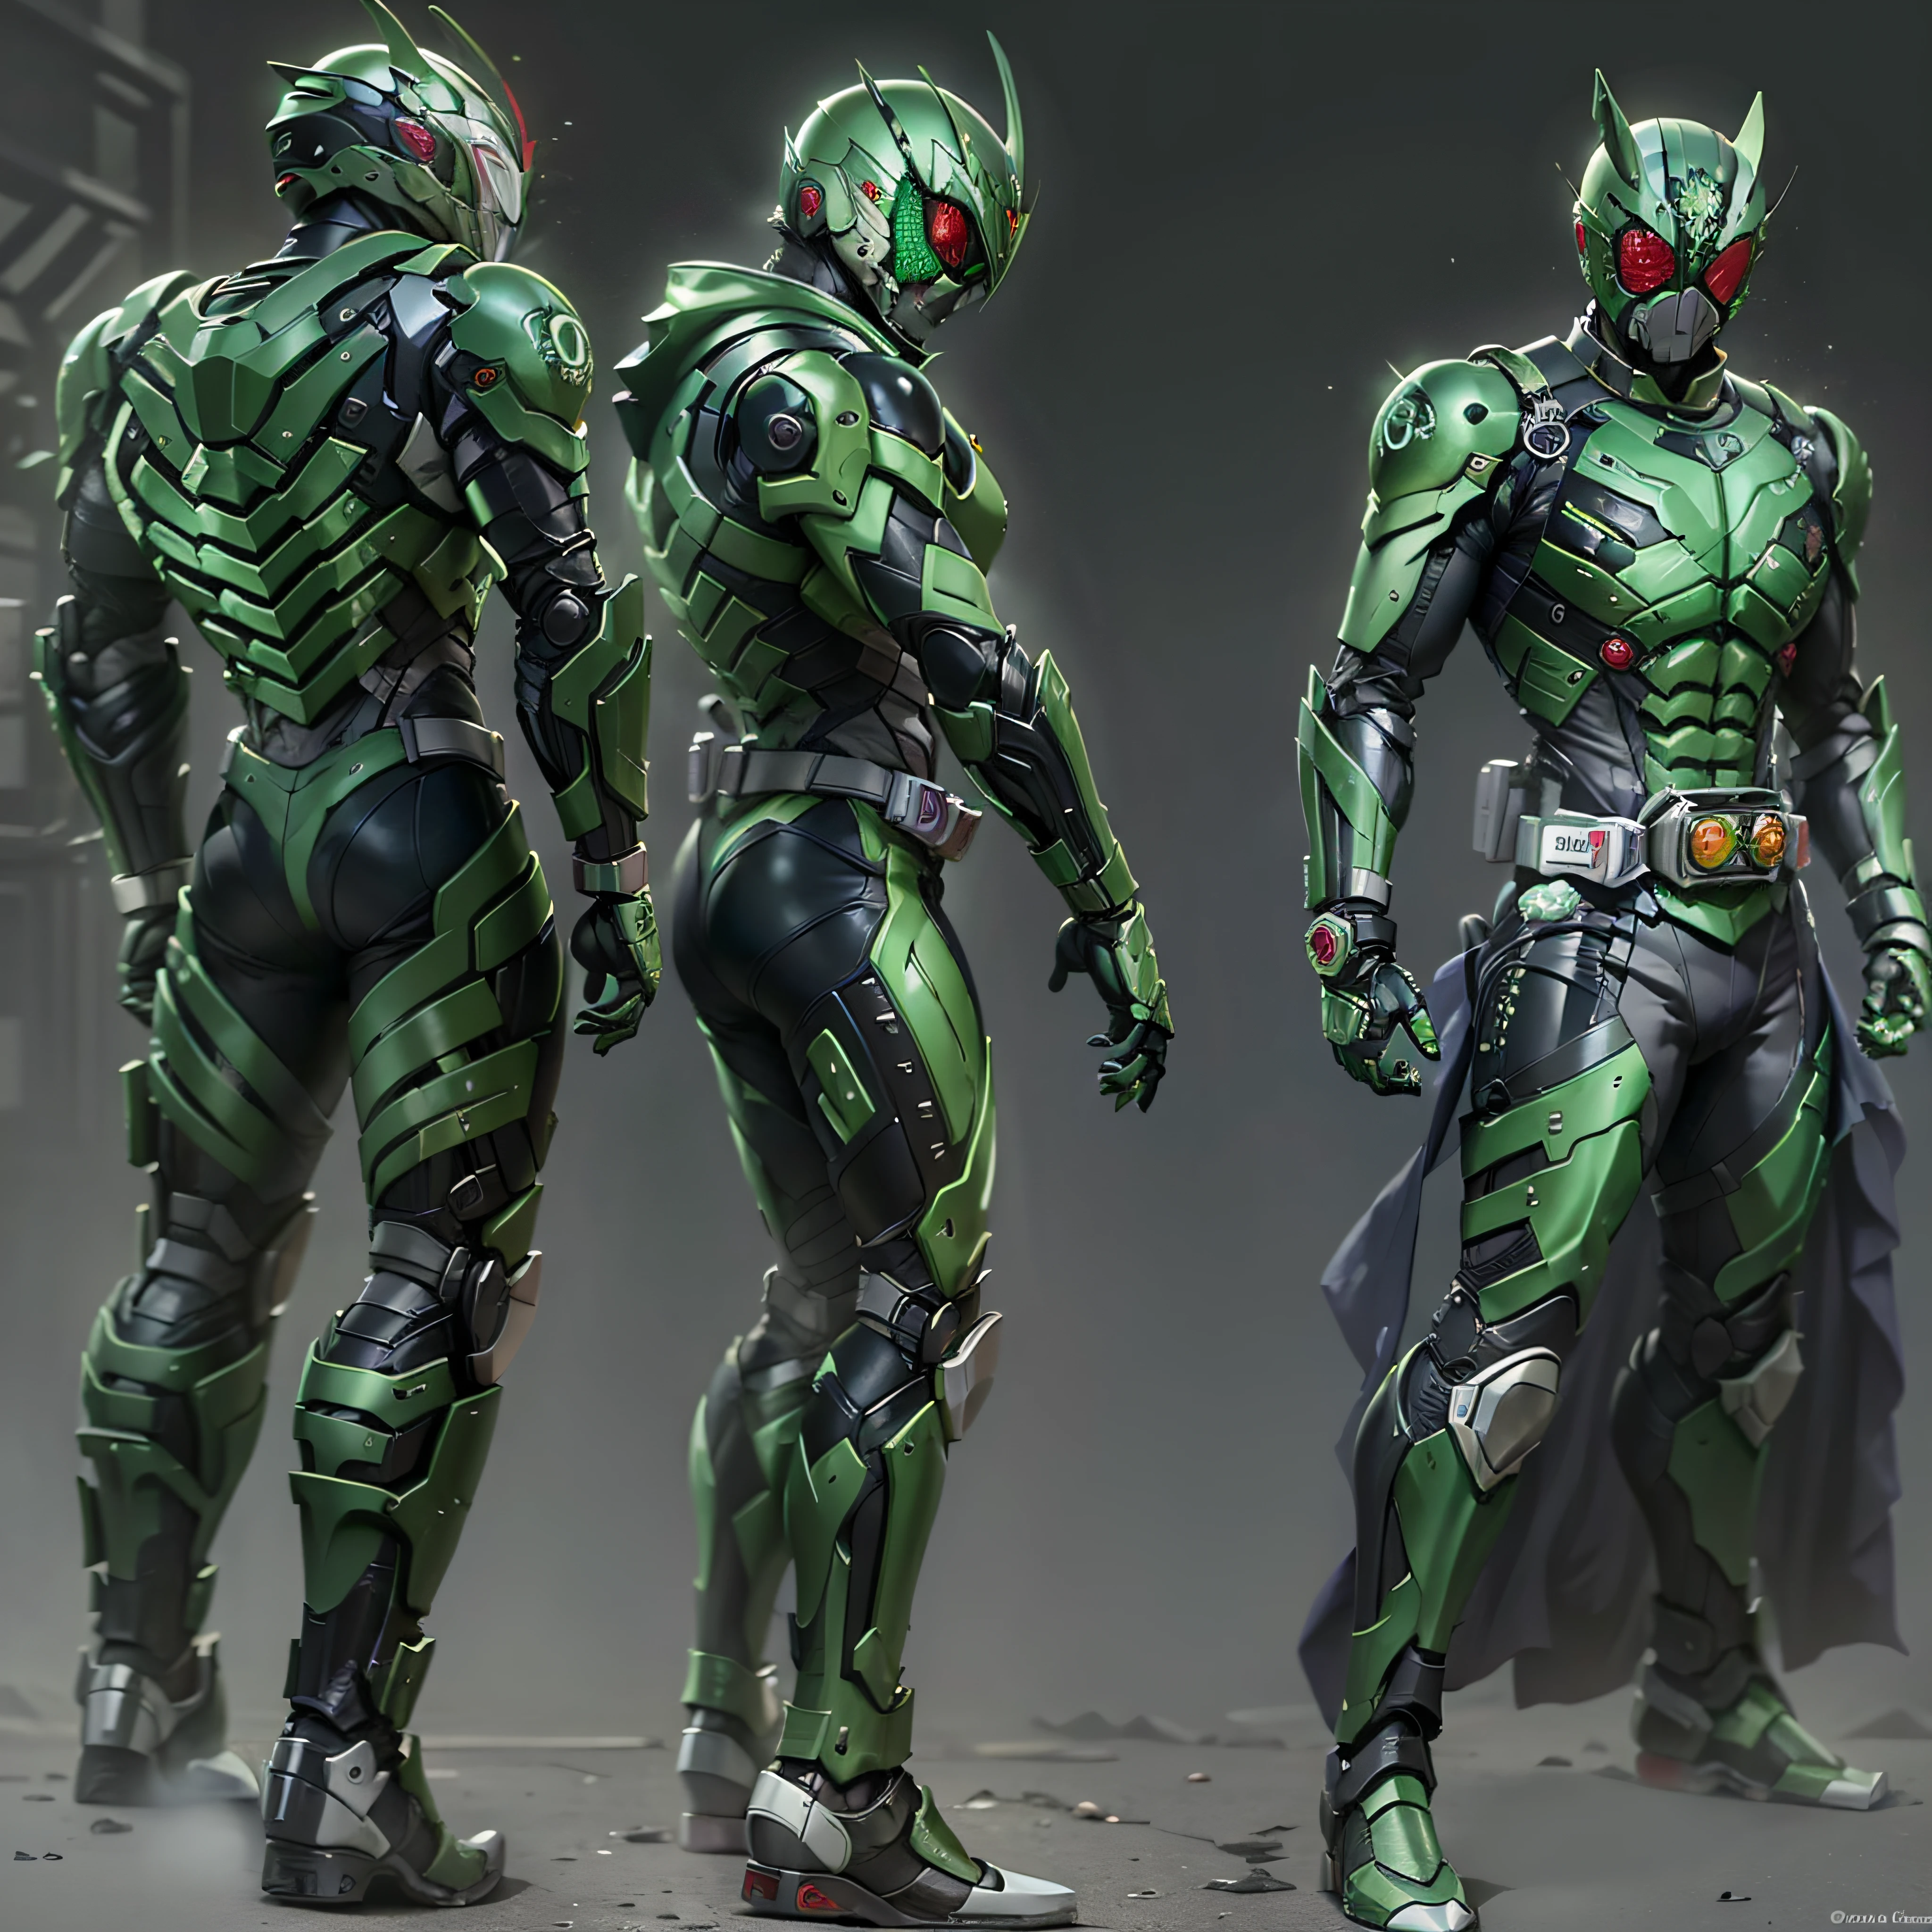 綠假面騎士, 银甲, 灰色和黑色的衣服, 綠色科技服, 密探, 機器人